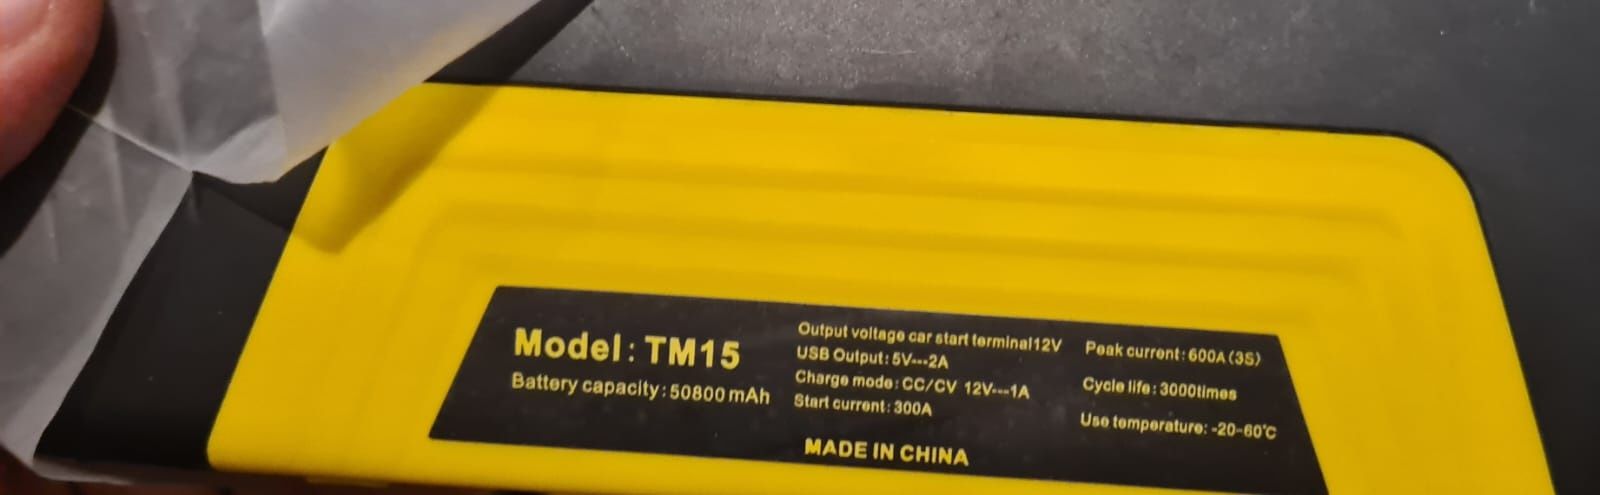 Powerbank TM15 o pojemności 50800 mAh.

Cechy produktu:

pojemność: 12